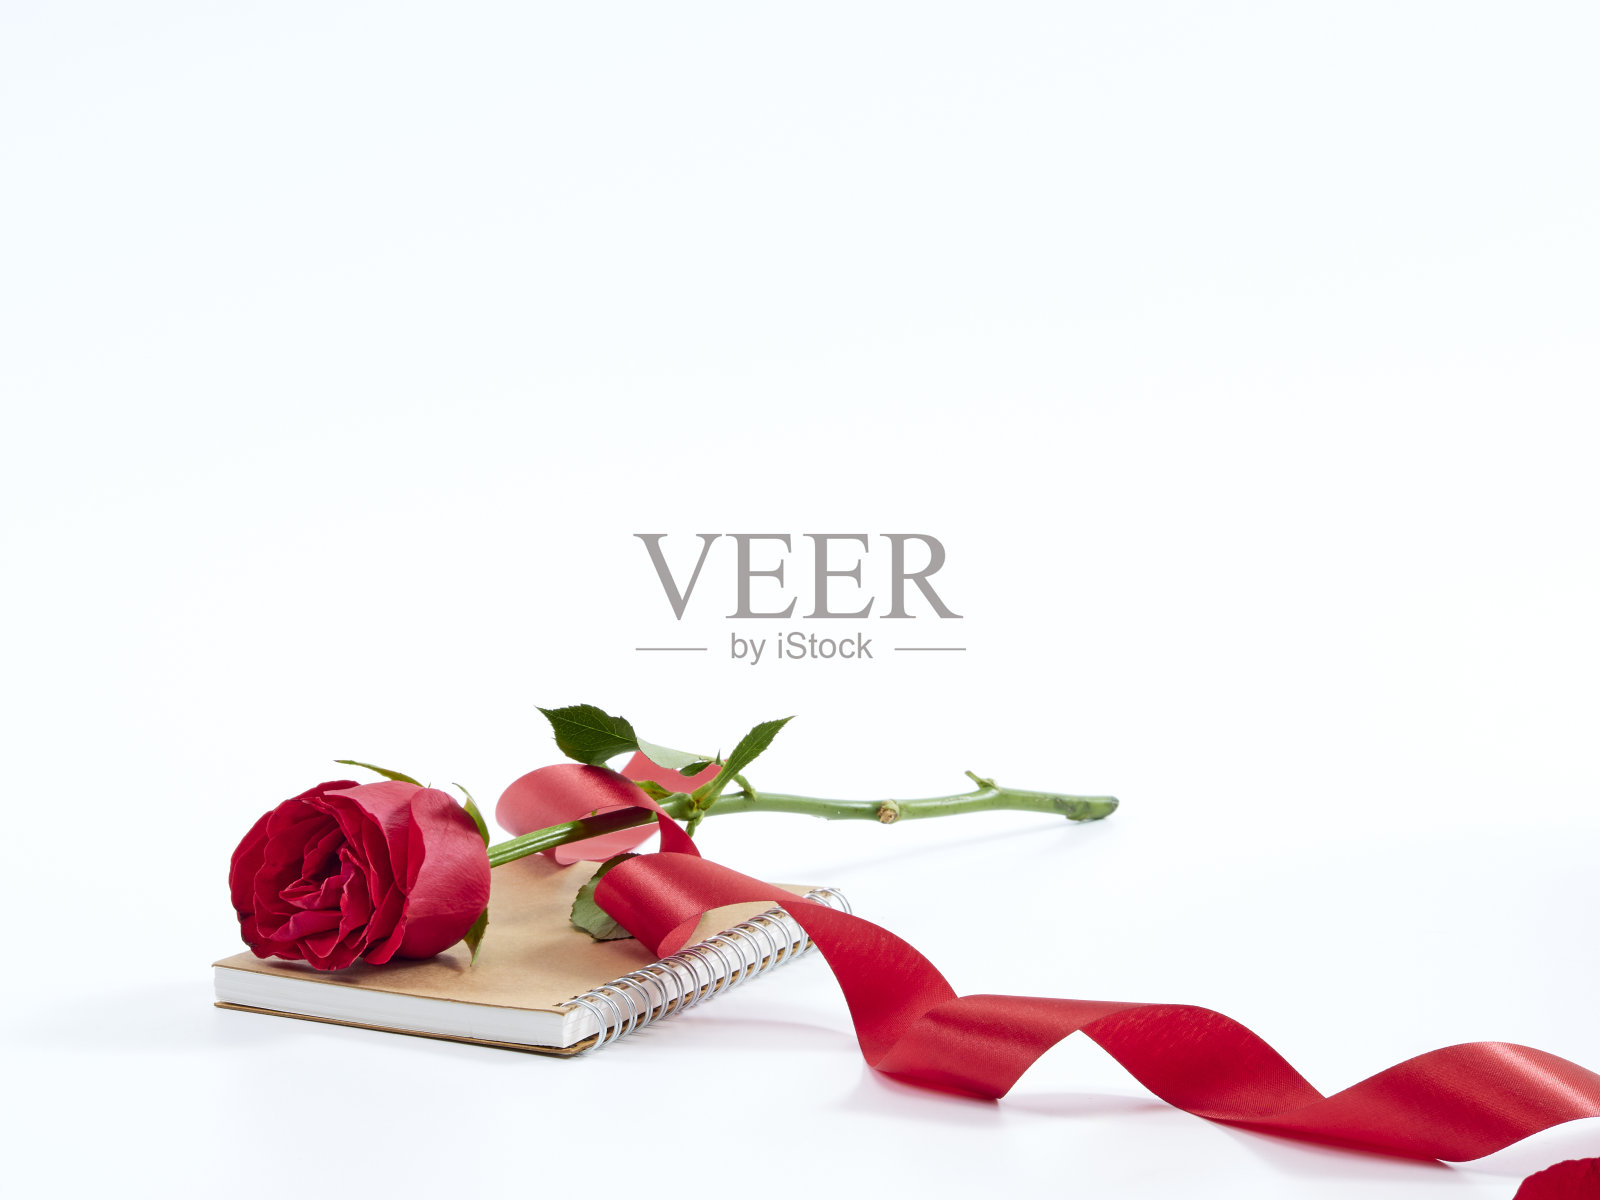 一朵带着红丝带的红玫瑰在日记本上。爱的象征。贺卡和婚礼。照片摄影图片